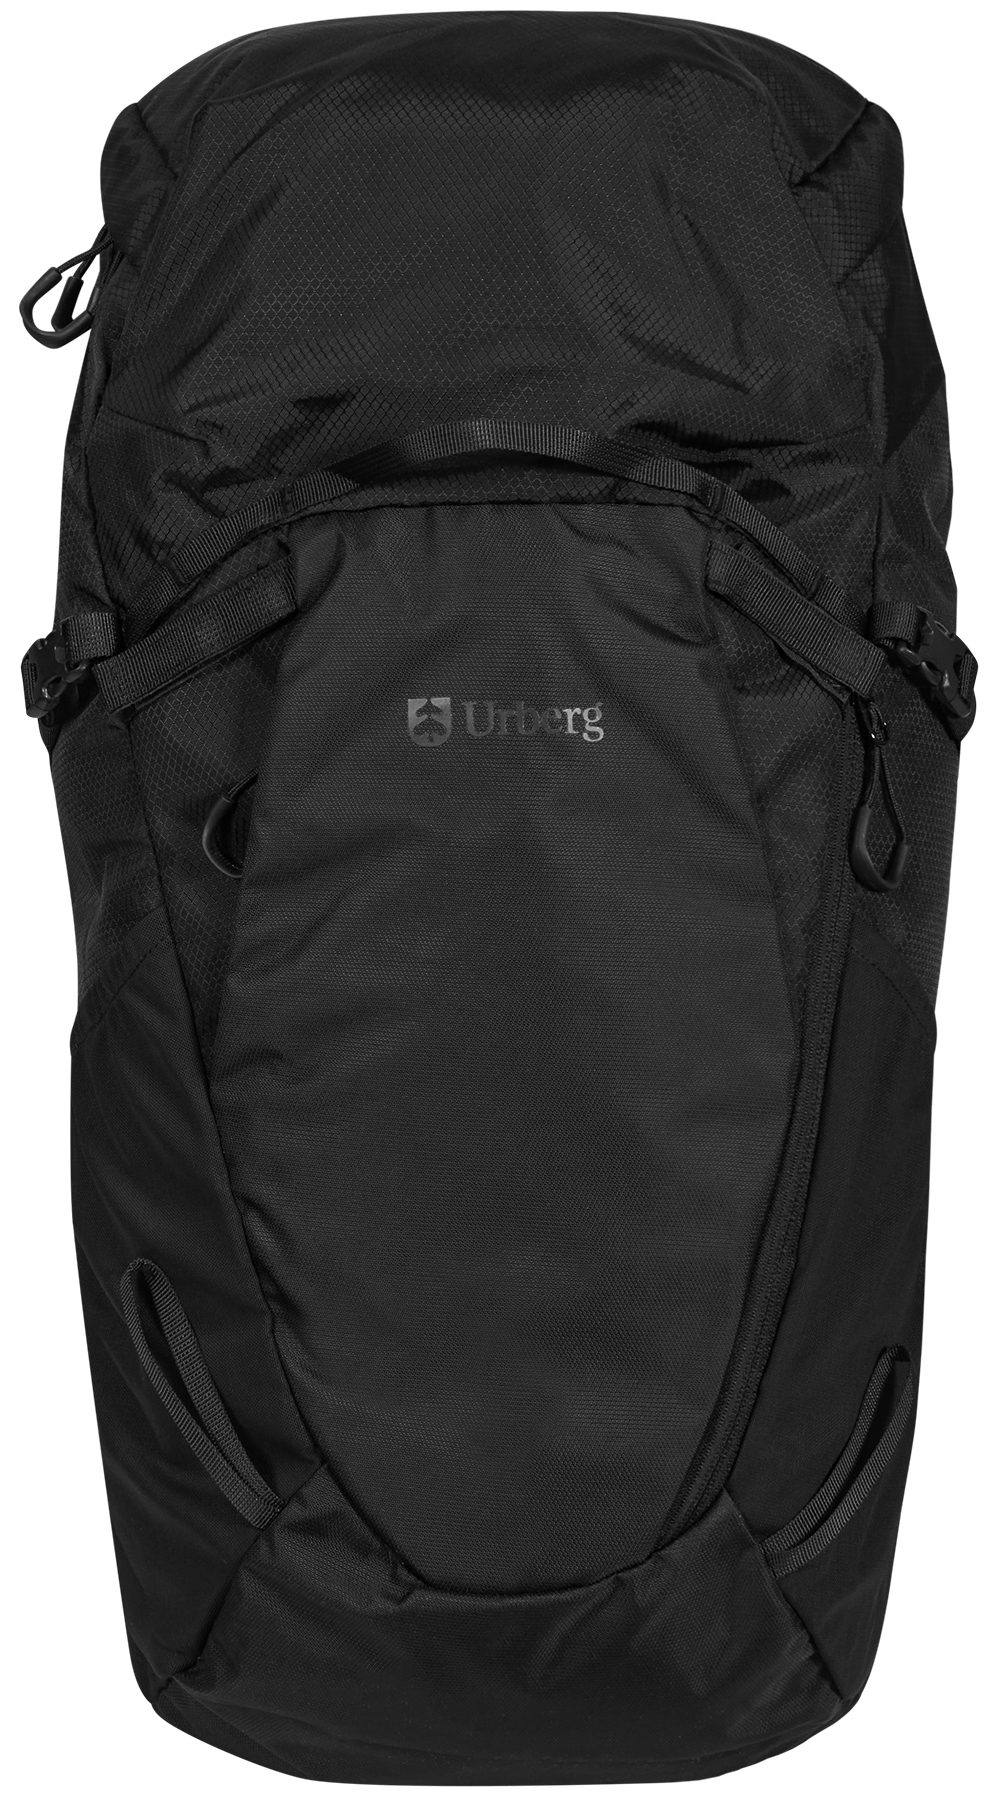 Urberg Luvos Backpack 25l Black